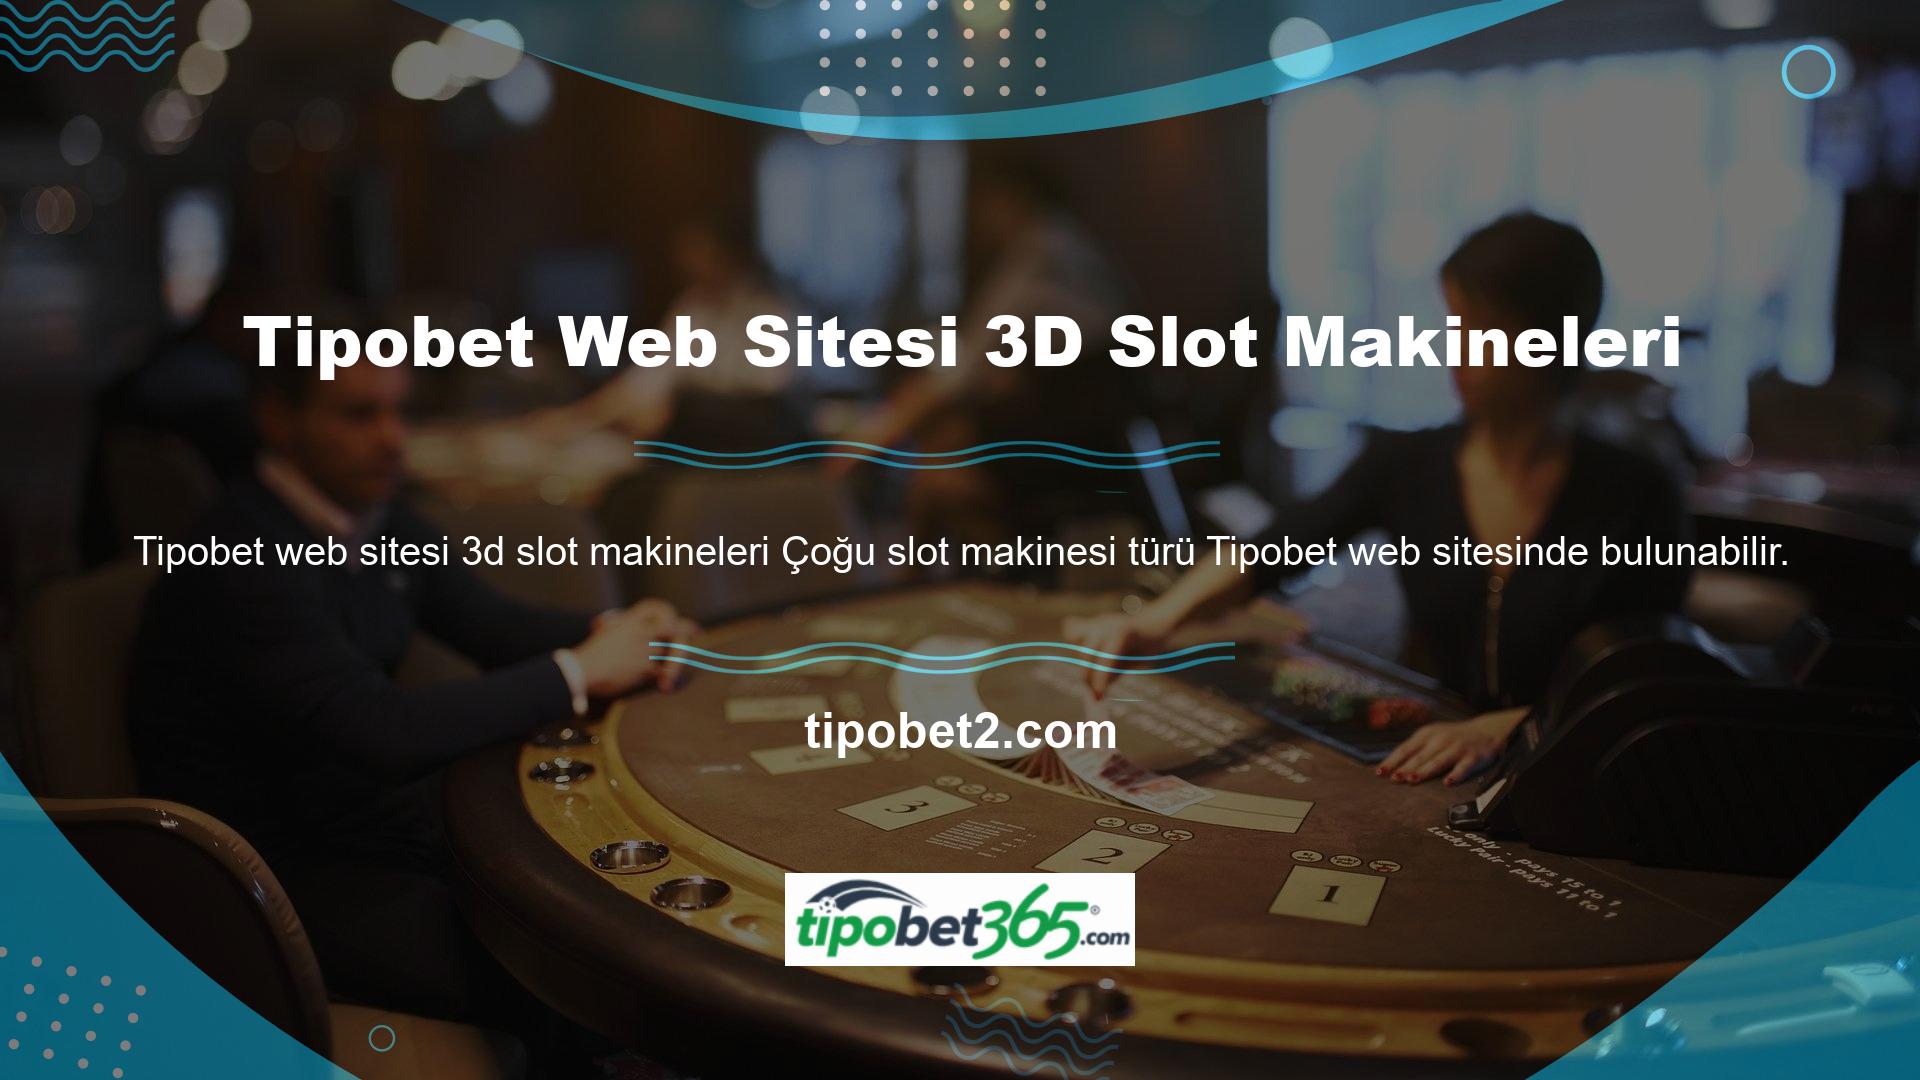 Bu noktada Tipobet üyelere çeşitli 3D slot makineleri için oyun sağlayıcı seçeneği sunması site ile çalışan oyun sağlayıcılar için oldukça önemlidir